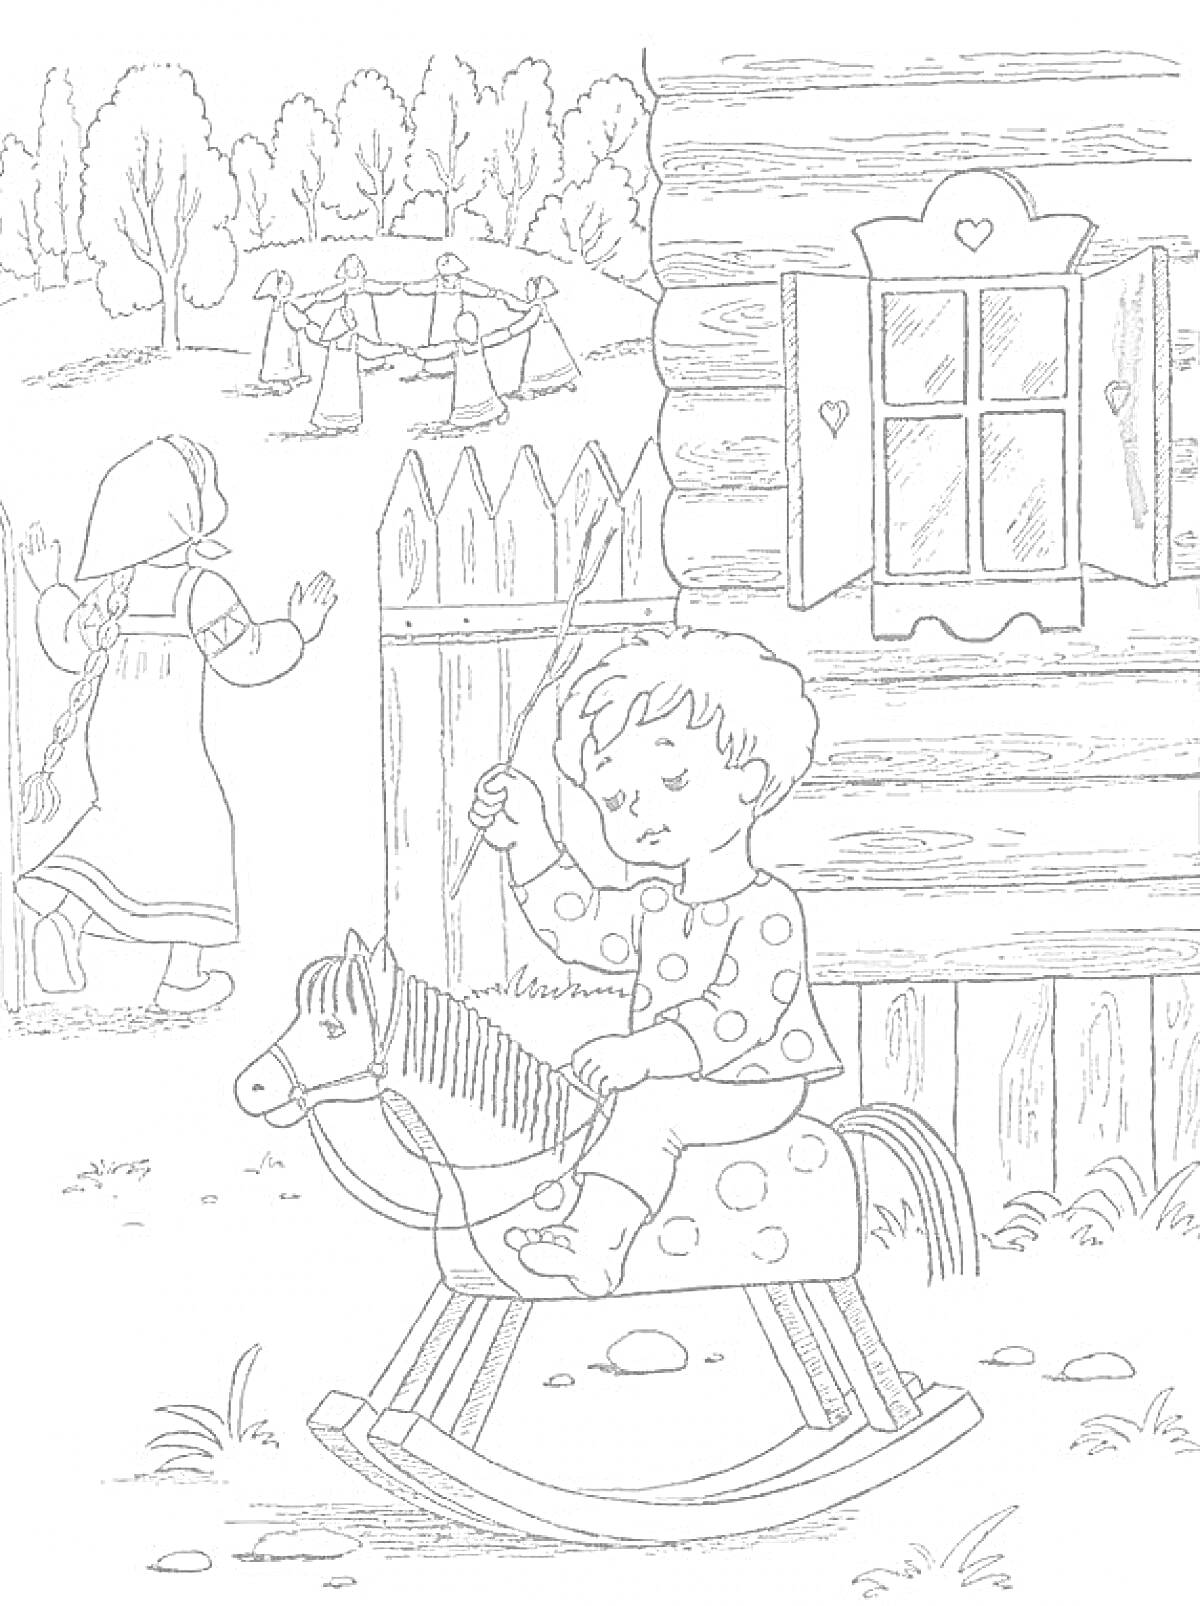 Раскраска Мальчик на деревянной лошадке перед деревянным домом, девочка в платке у забора, дети играют в хоровод на фоне леса